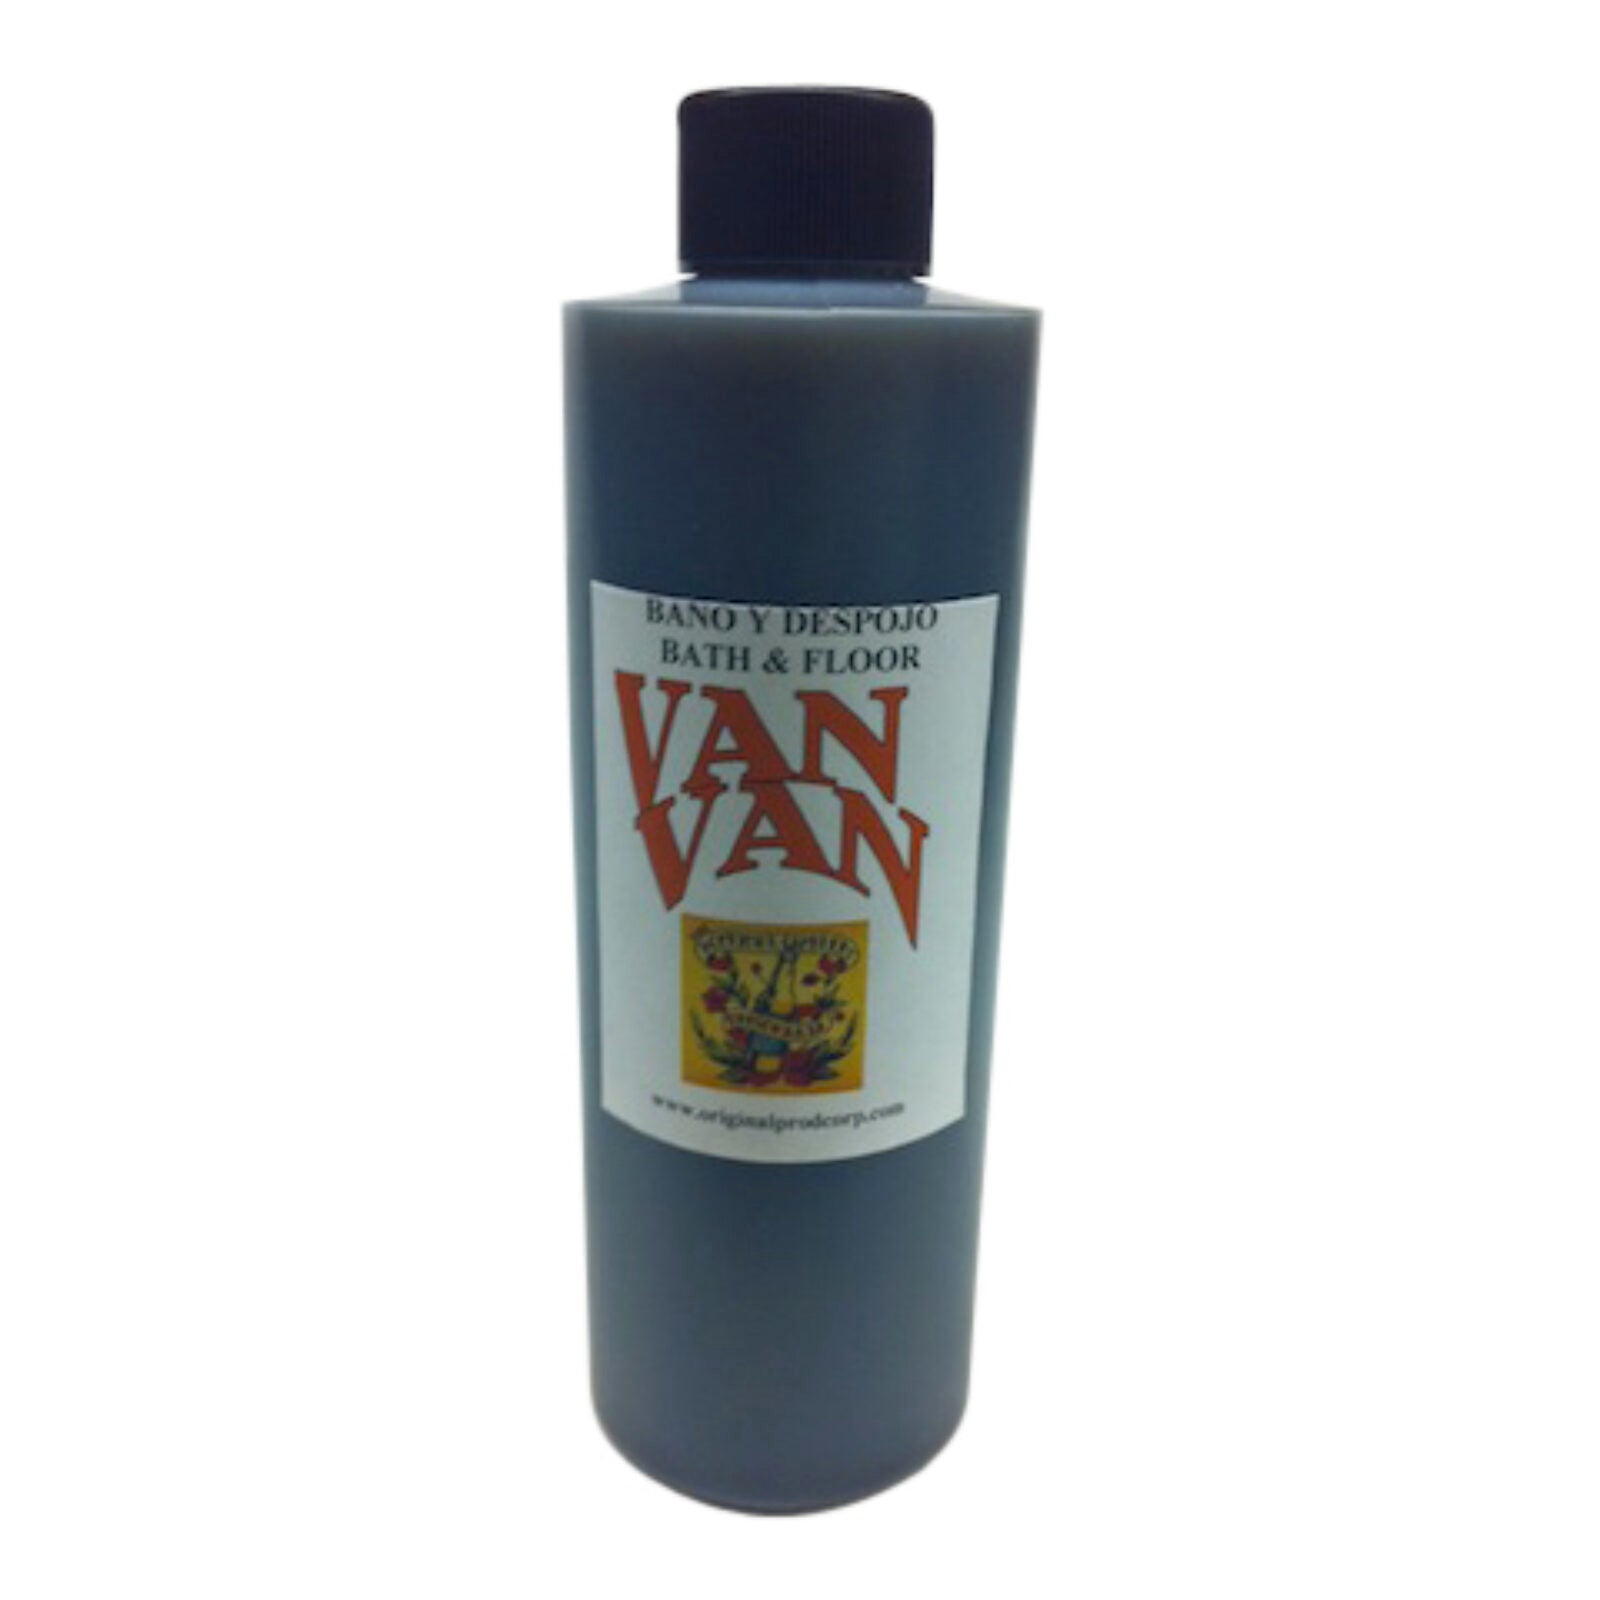 Van Van Bath & Floor Wash